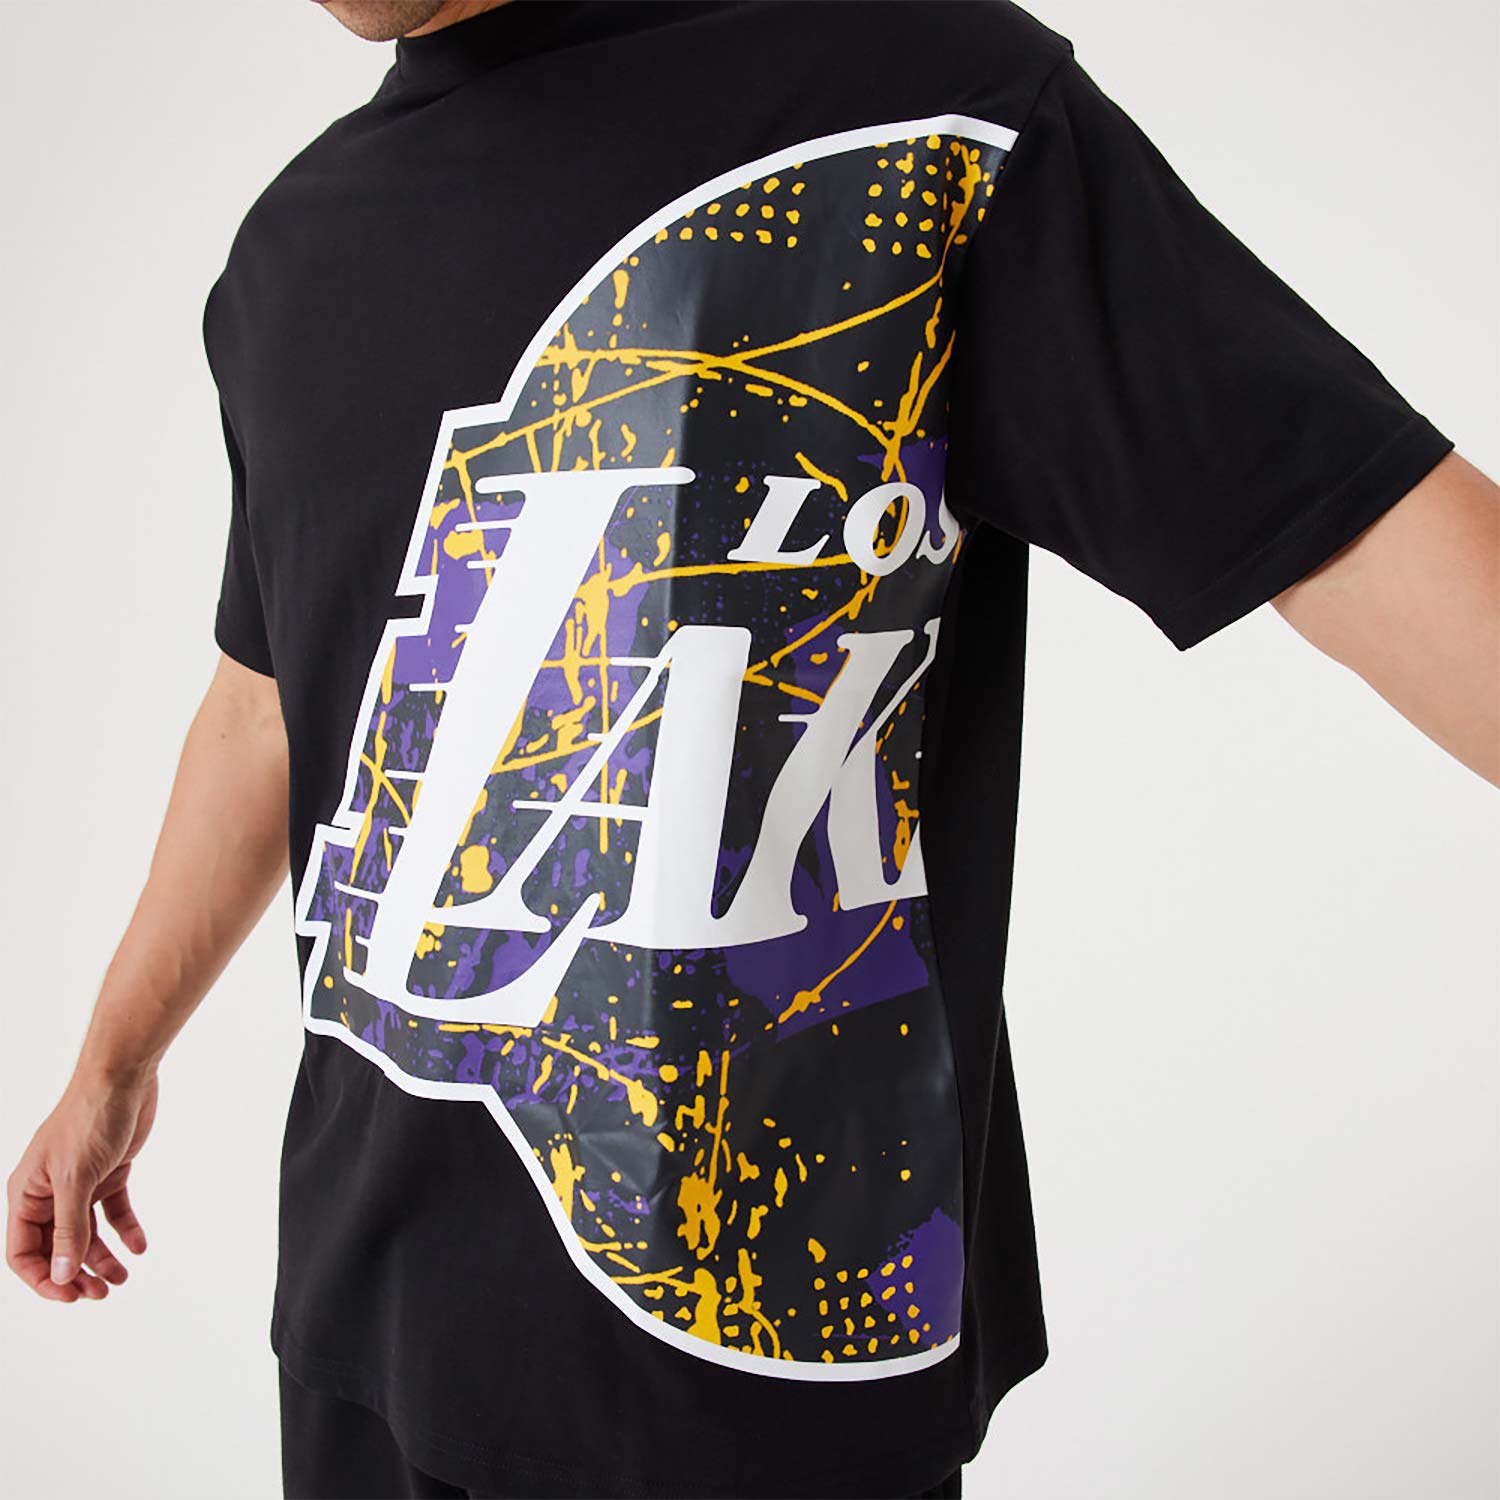 LA Lakers NBA Large Team Logo Black Oversized T-Shirt